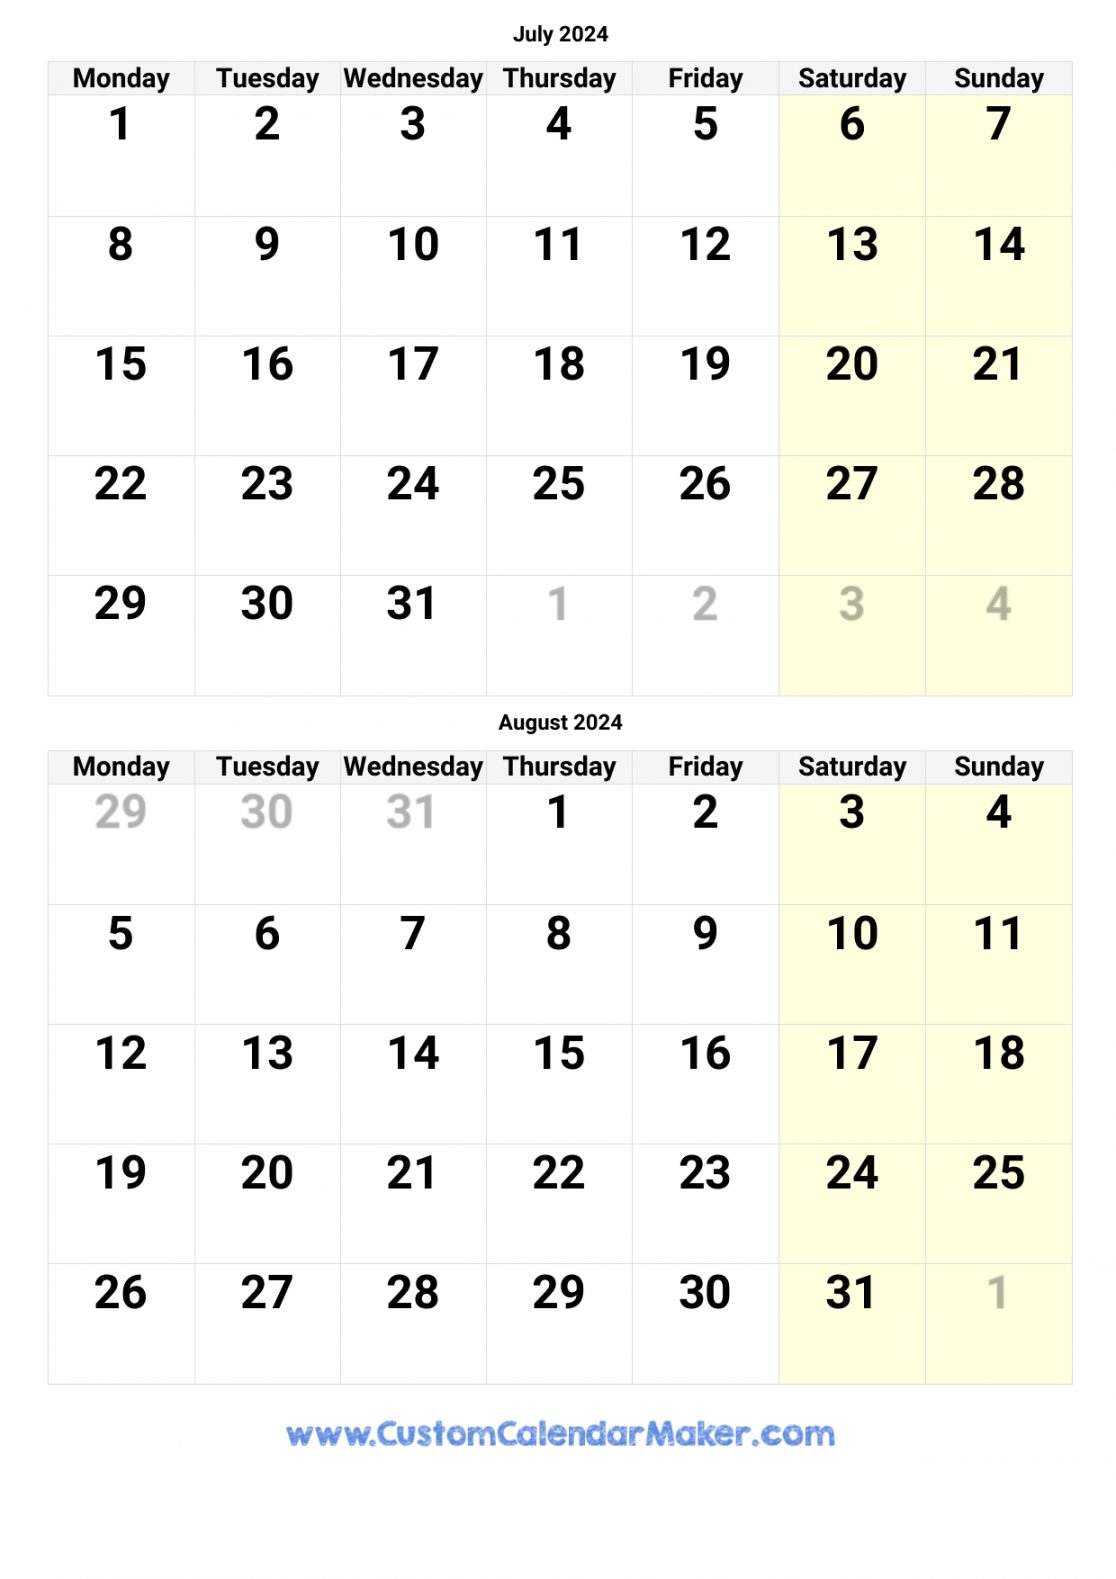 July August September Calendar 2024 In 2024 | September Calendar pertaining to July Aug Sept 2024 Calendar